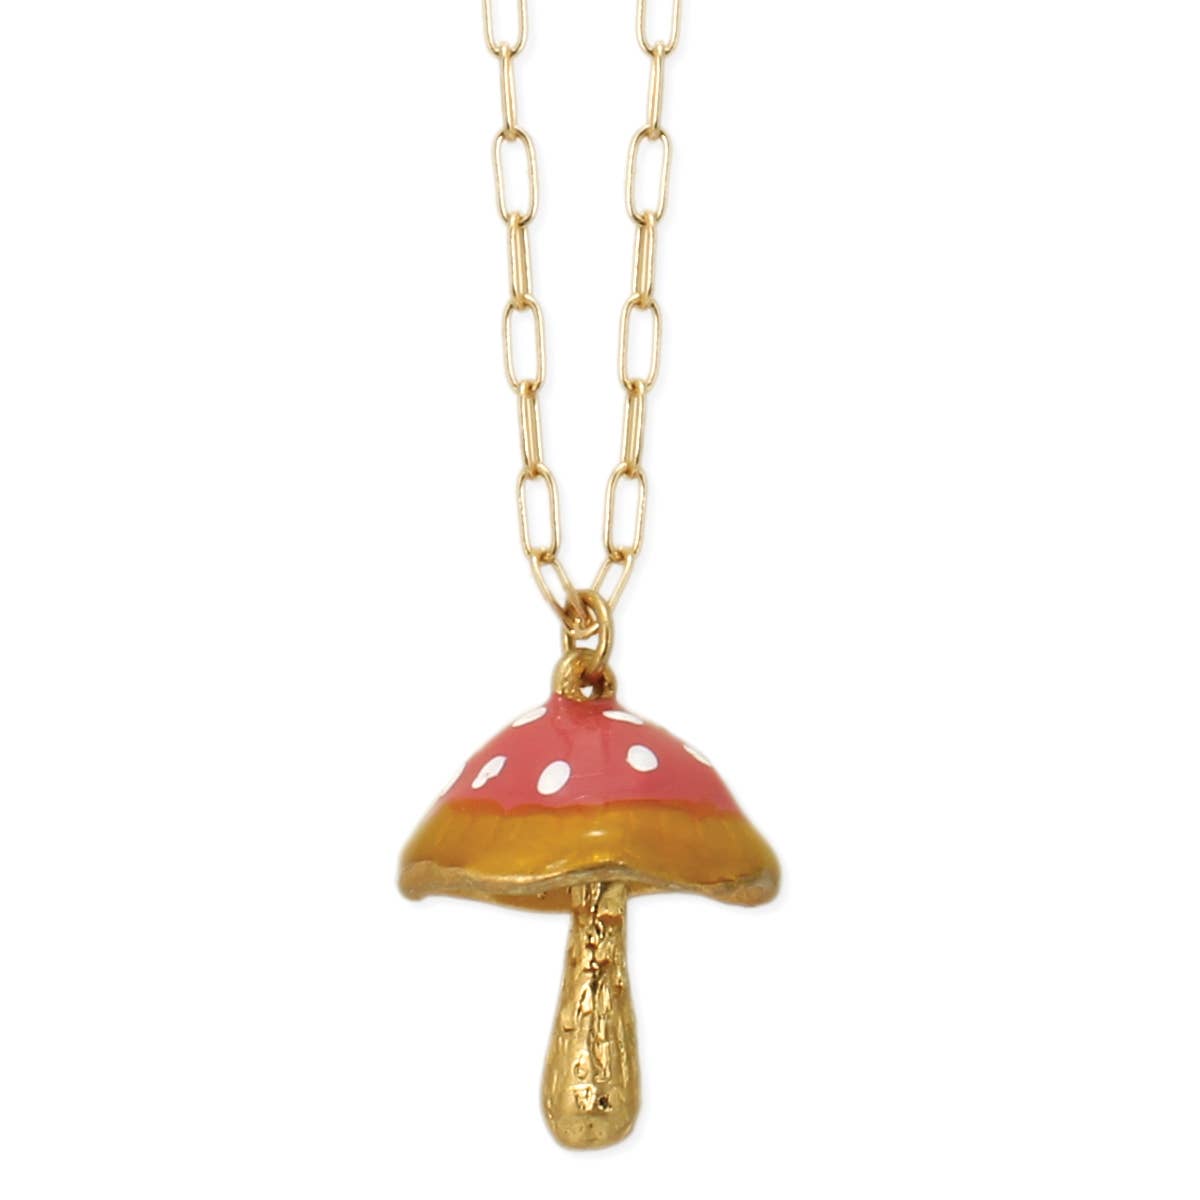 Polished 10k Yellow Gold Magic Mushroom Pendant Necklace